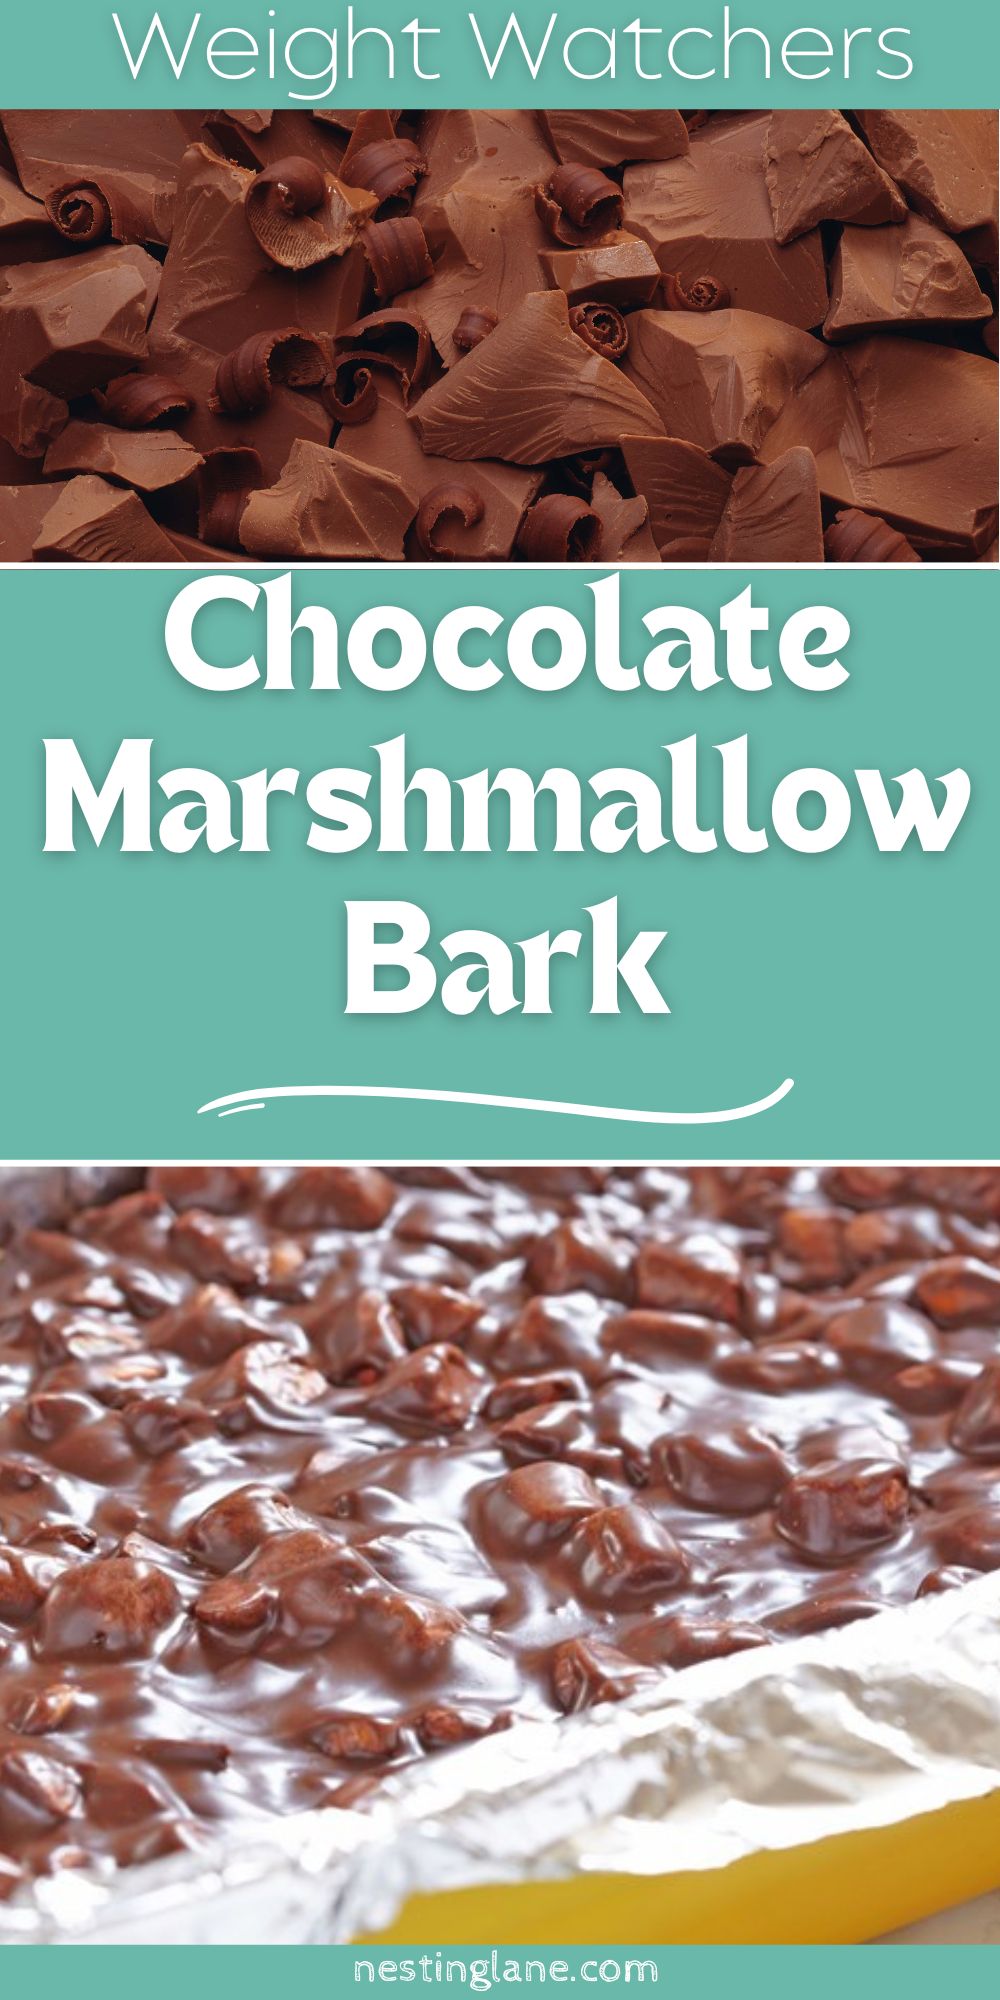 Chocolate Marshmallow Bark graphic.